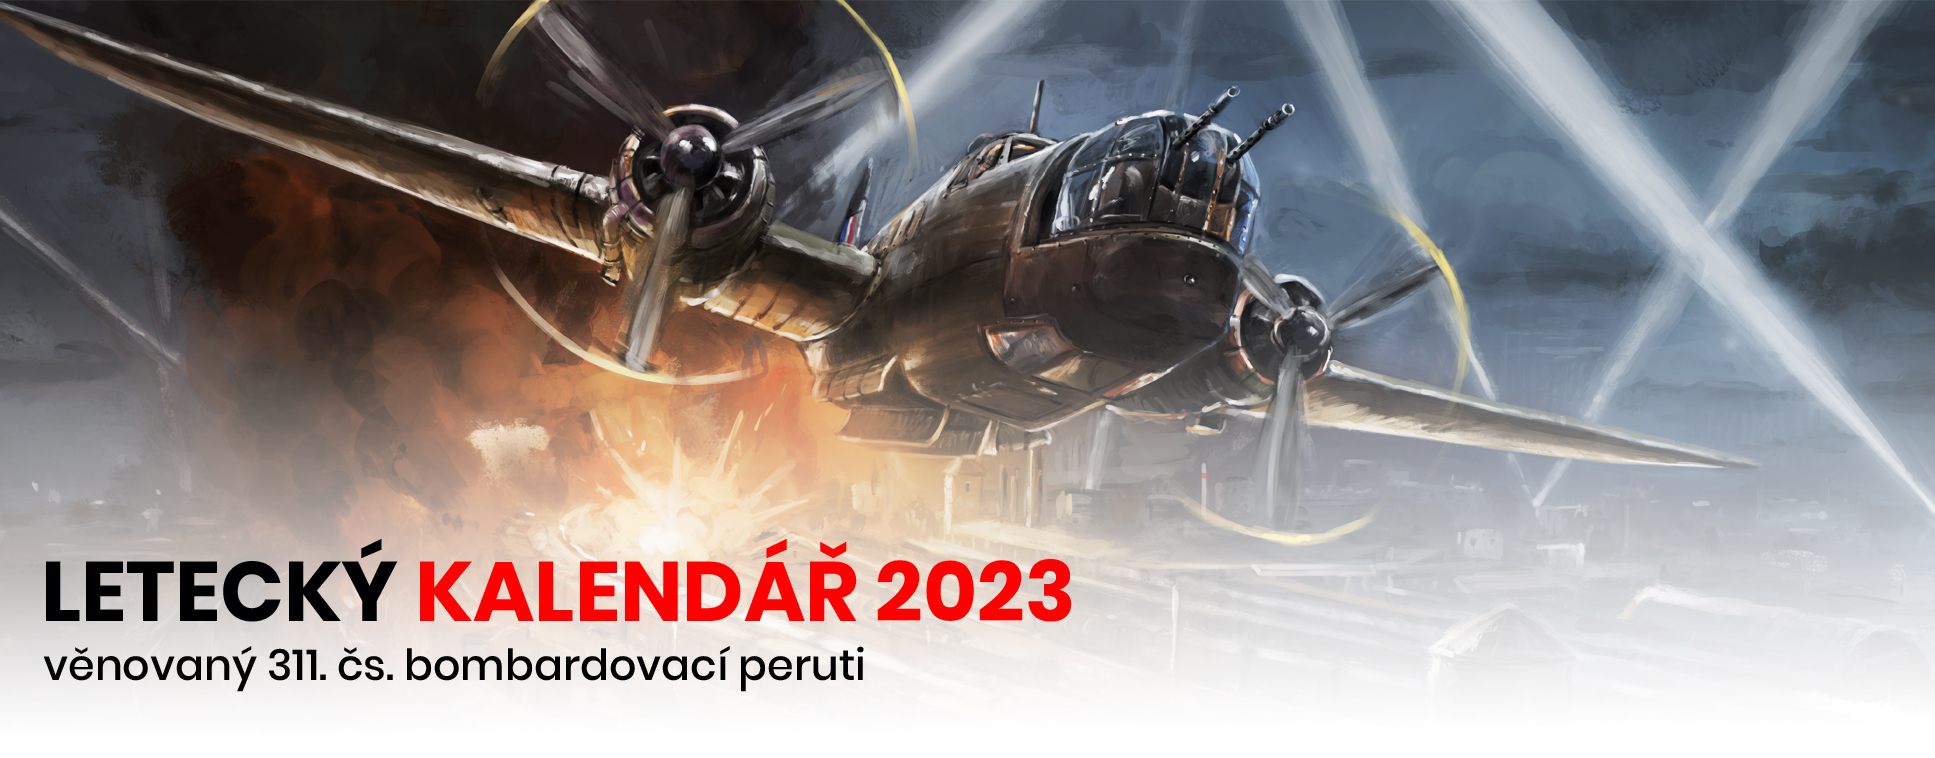 final_bannerykategorie_kalendar_2023